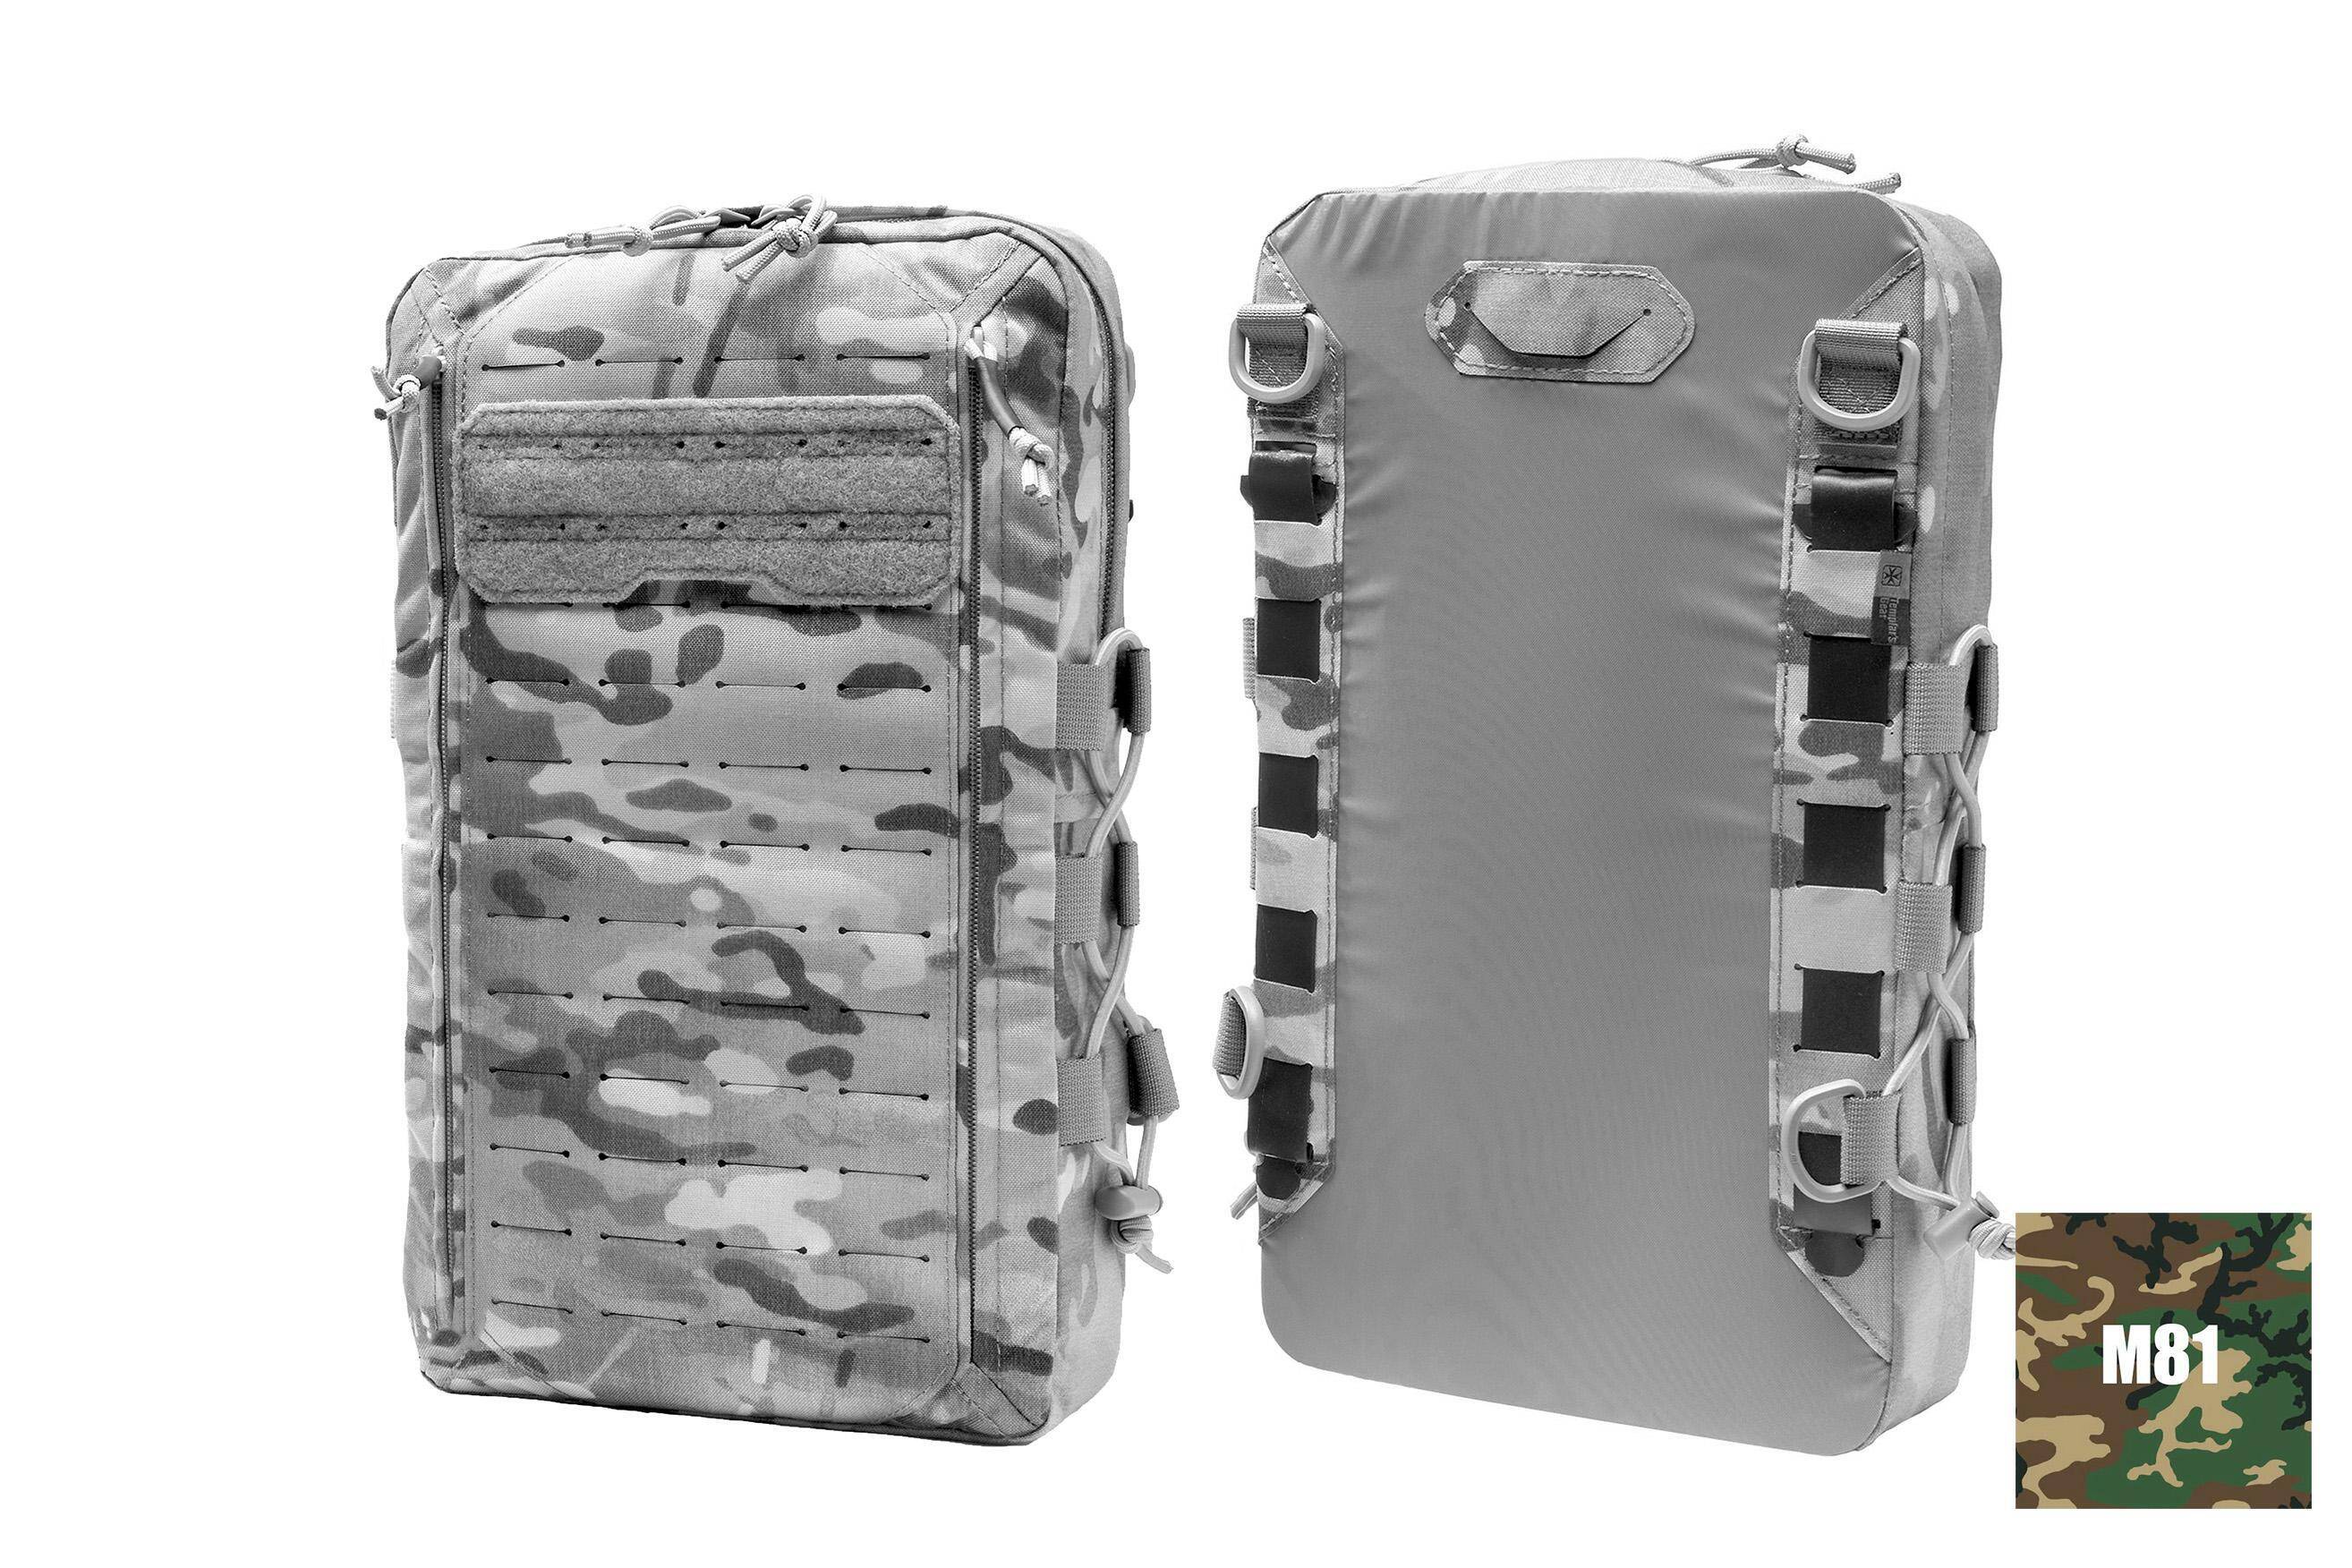 TG-HP Vest Pack H2 LARGE Woodland M81